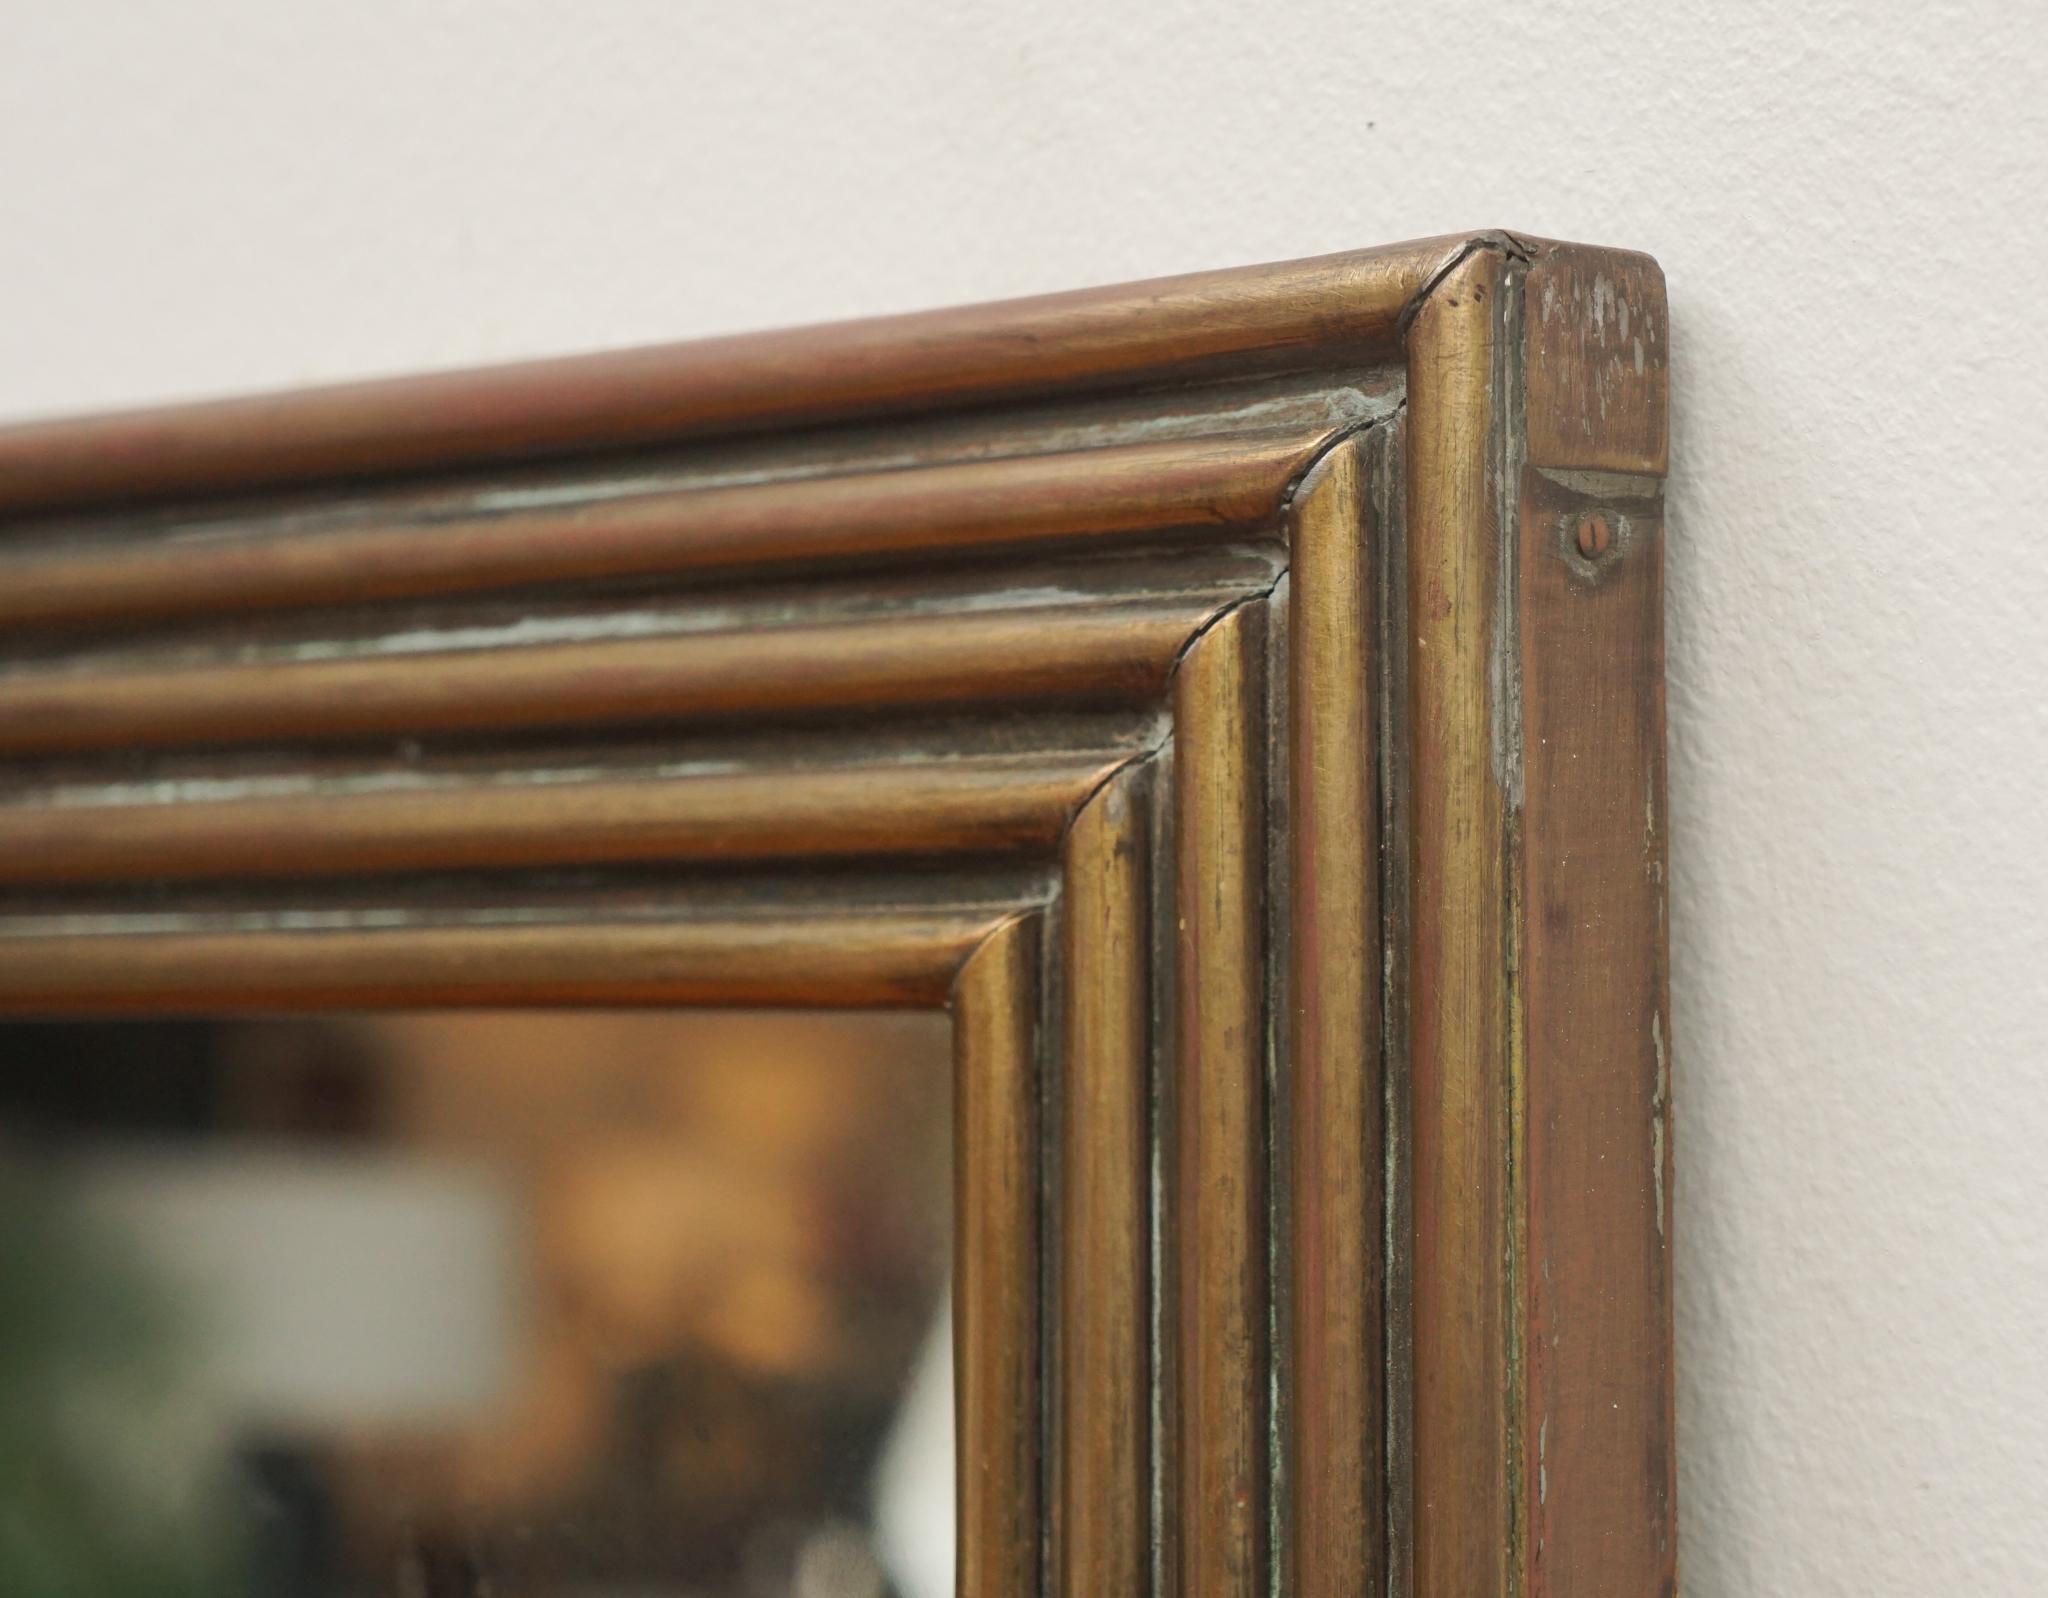 Avec sa faible largeur et ses détails en escalier, ce miroir français vintage encadré de laiton est parfait pour les endroits où l'espace mural est limité.  A considérer comme un miroir d'entrée ou de fin de couloir.  Quel que soit l'endroit où il